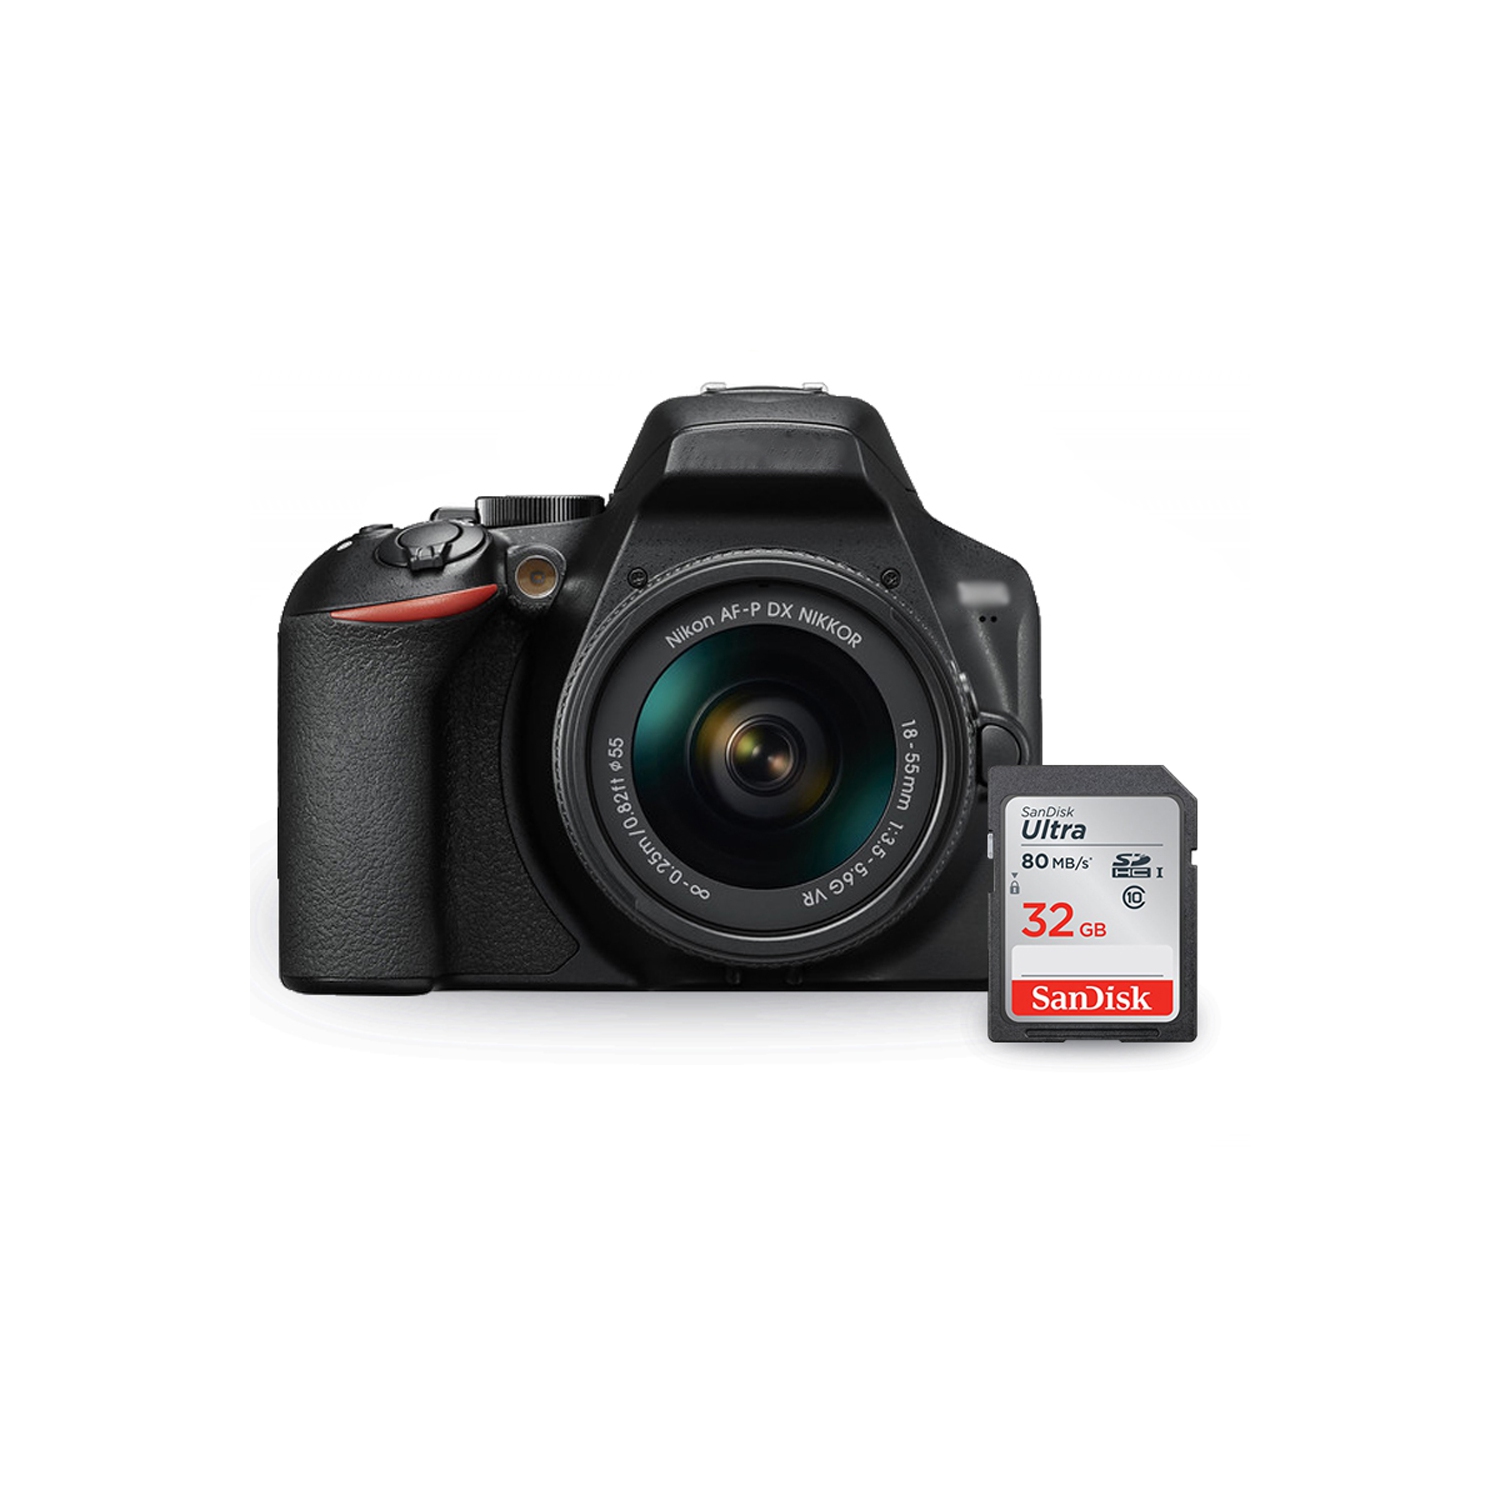 Nikon D3500 DSLR Camera with 18-55mm VR Lens 1590 + Sandisk Ultra 32GB SD